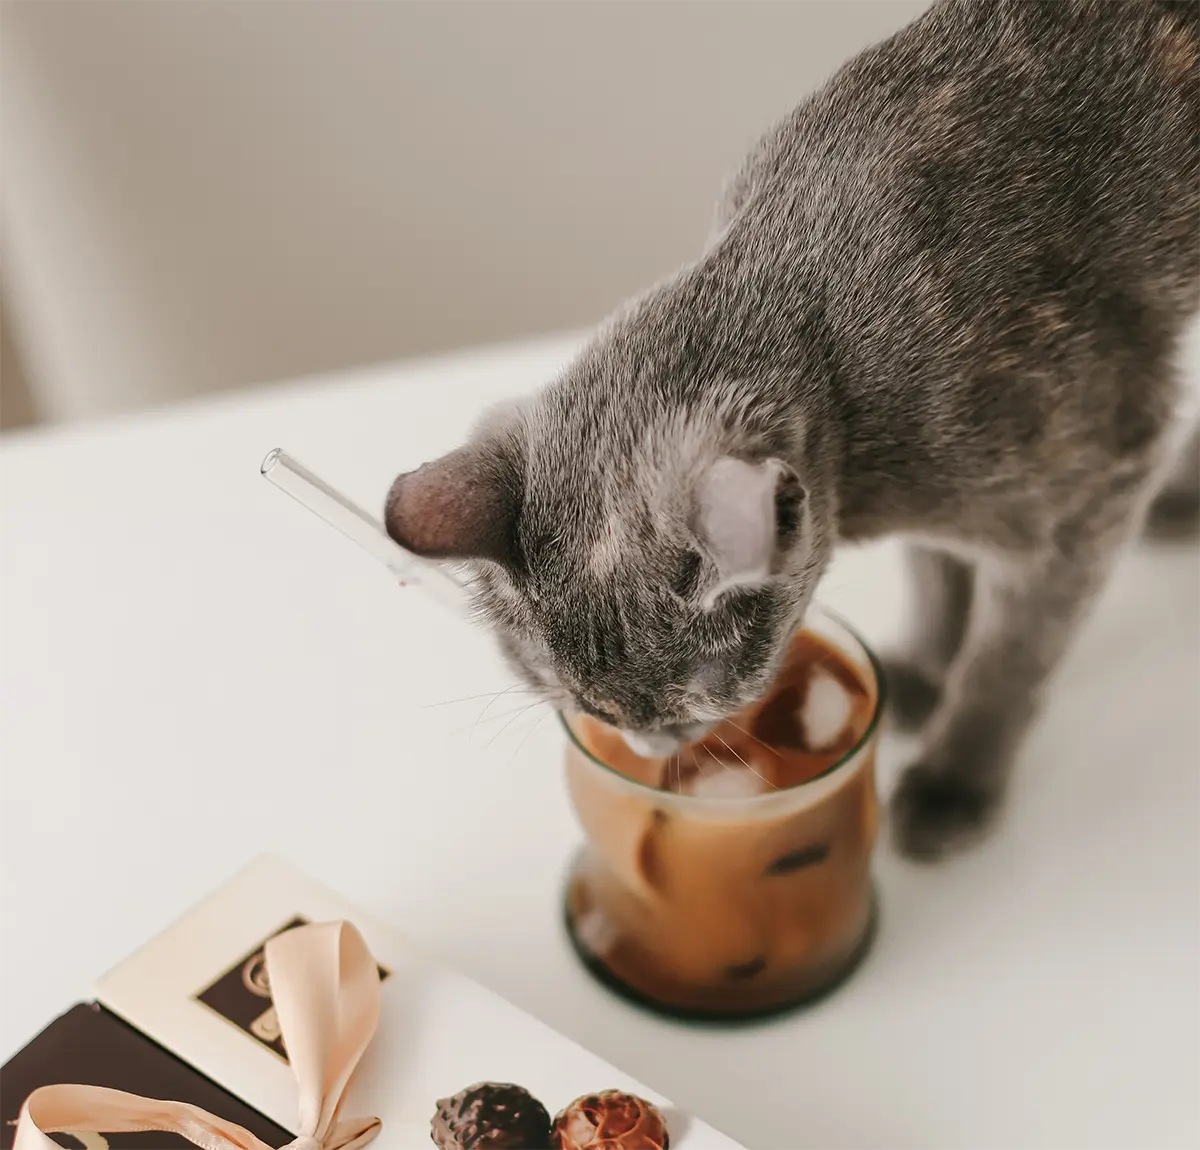 ¿Qué alimentos humanos son tóxicos para los gatos?